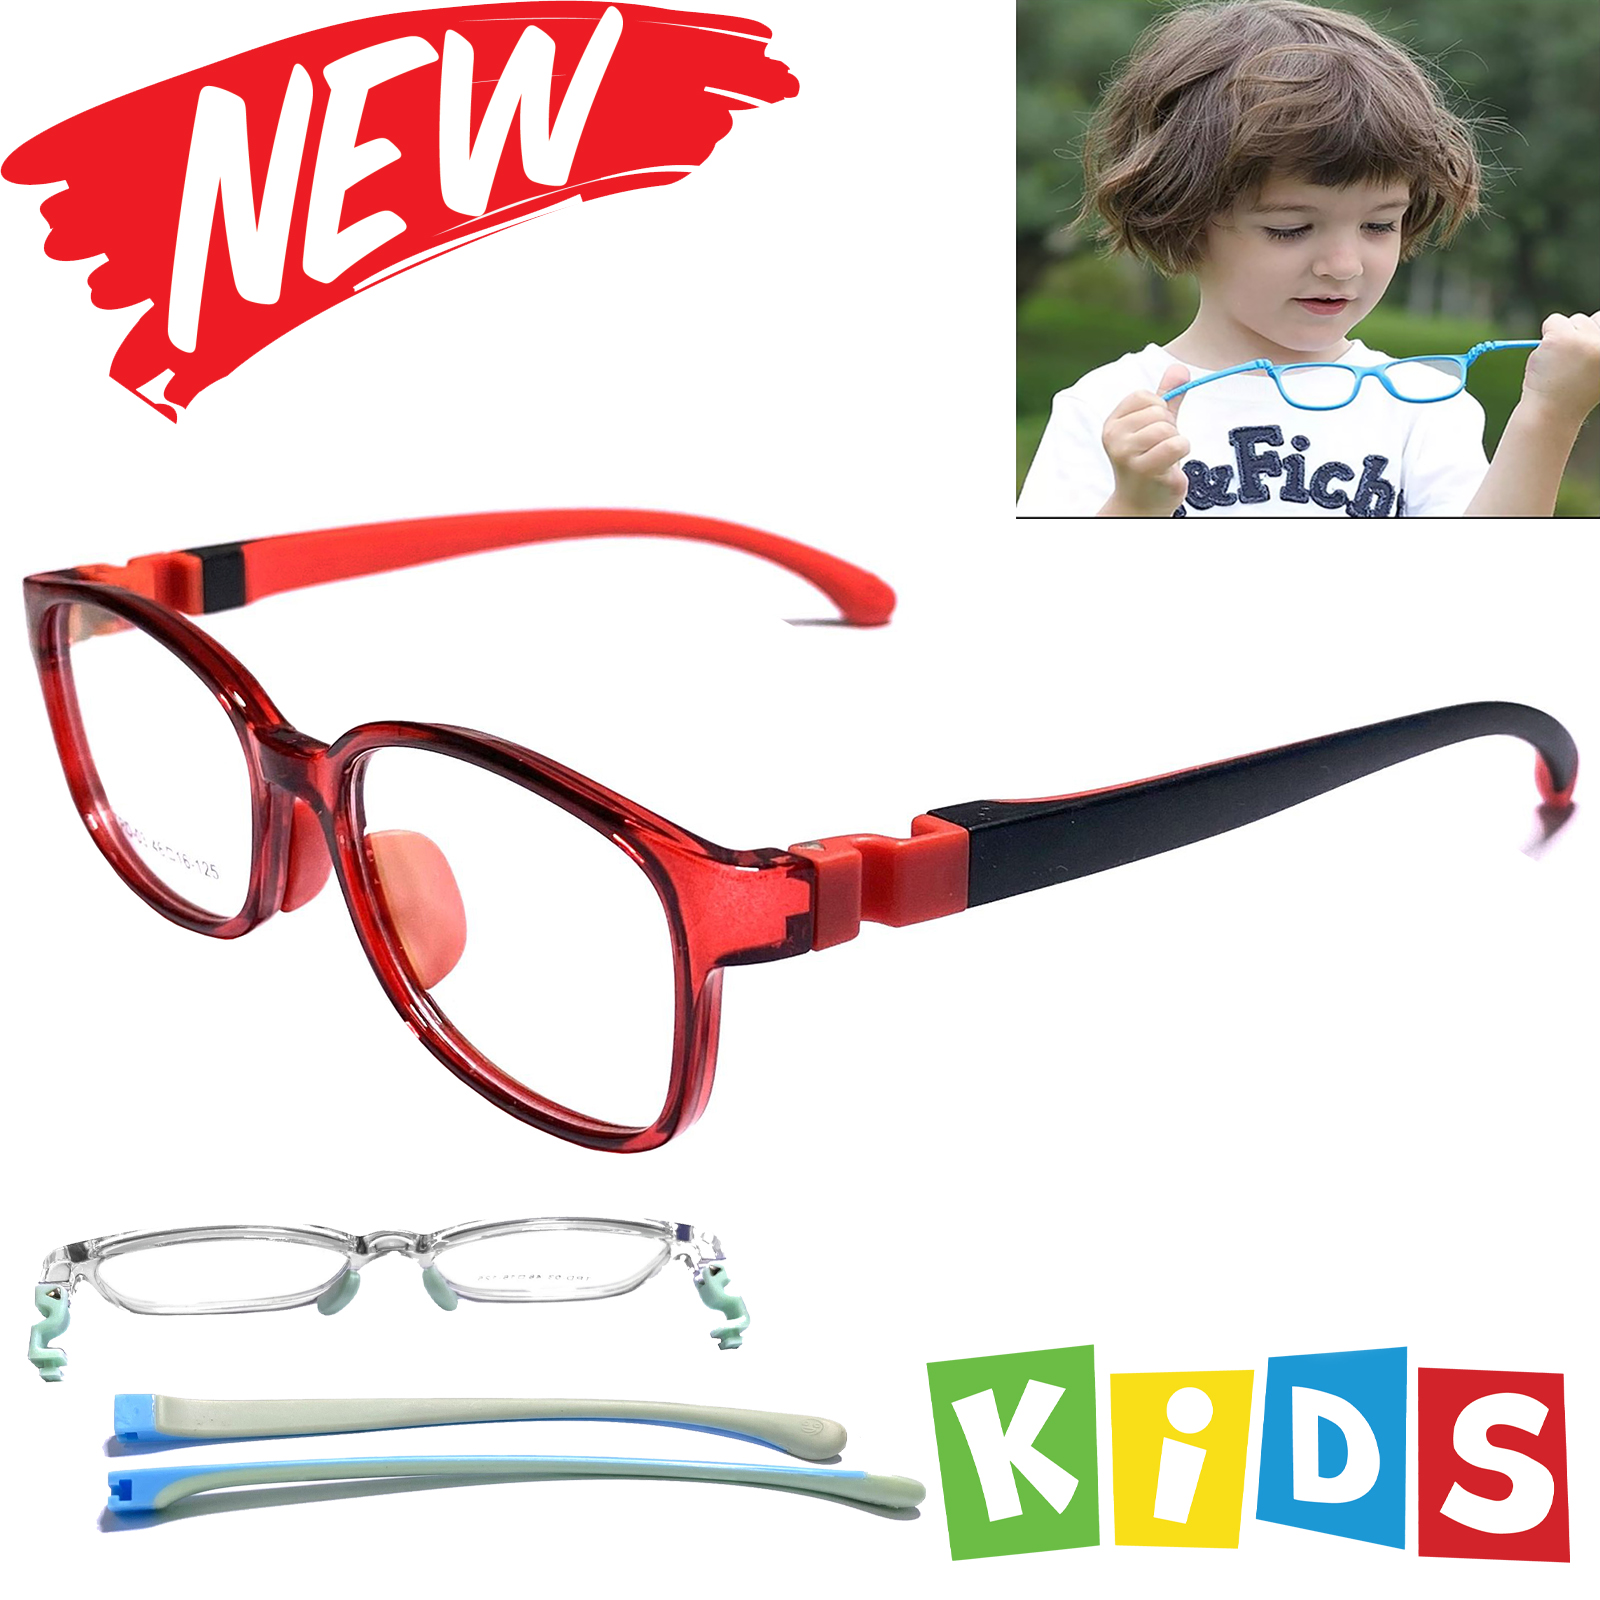 แว่นเด็ก กรอบแว่นตาเด็ก  กรองแสง สีฟ้า blue block แว่นเด็ก บลูบล็อค รุ่นTRD-03 ขาข้อต่อยืดหยุ่น ถอดขาเปลี่ยนได้ วัสดุTR90เบาสวมไส่สบาย